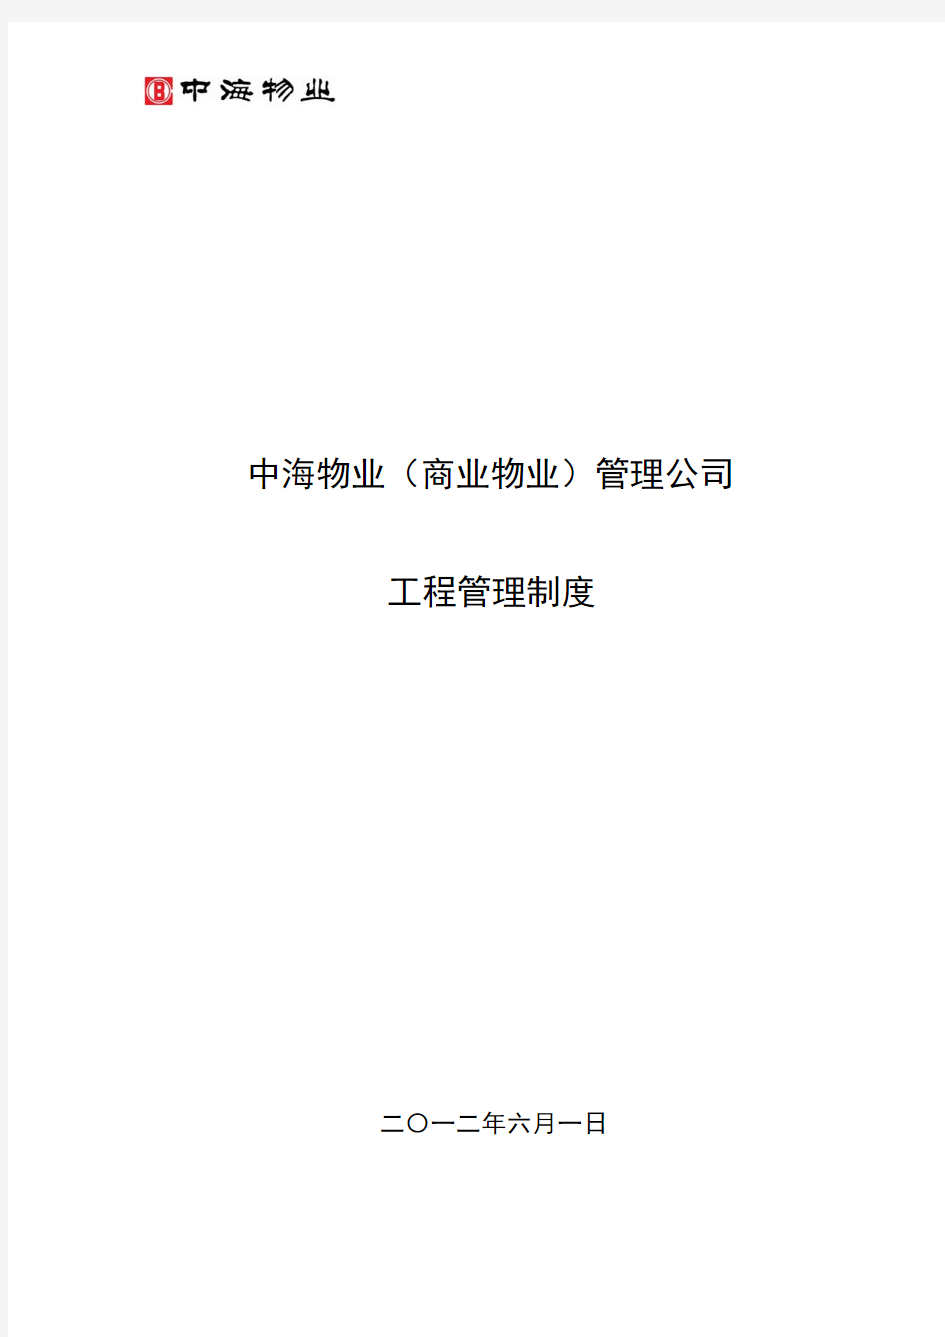 中海物业(商业物业)管理公司工程管理制度2012.06.01